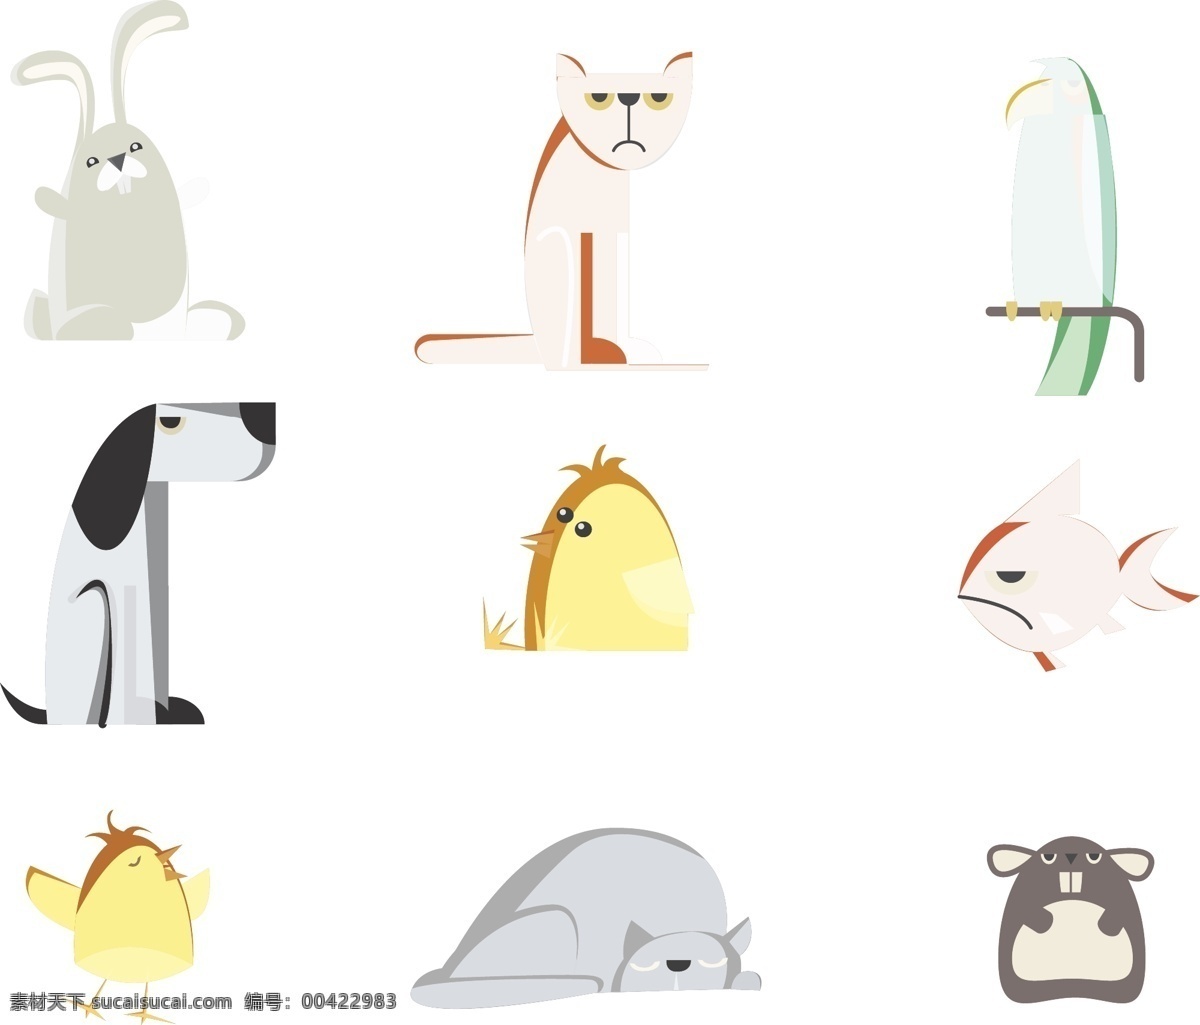 卡通 动物 图案 矢量 元素 通动物 可爱动物 小动物 动物装饰 海报装饰 装饰图案 动物图案 艺术动物 艺术图案